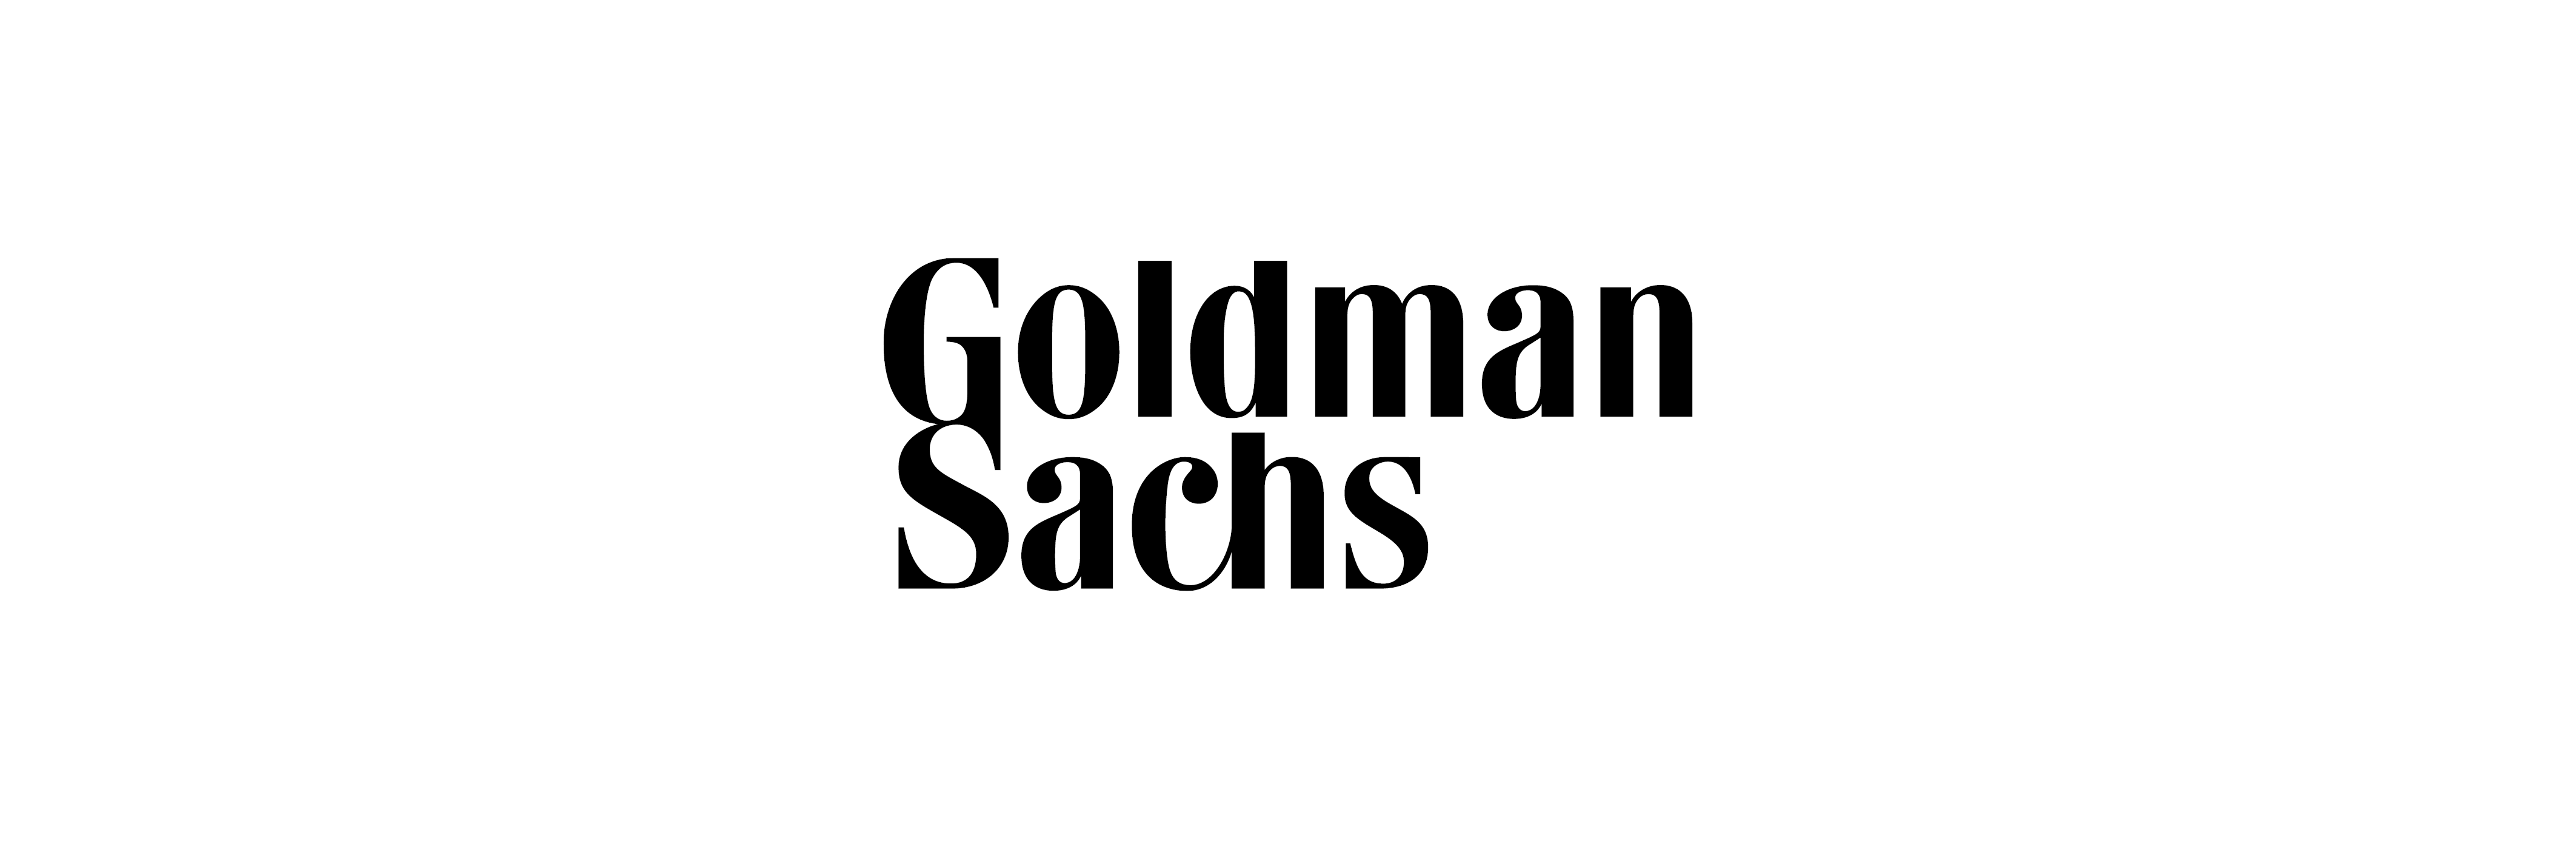 Goldman Sachs Australia Australia s LGBTQ Inclusive Employers